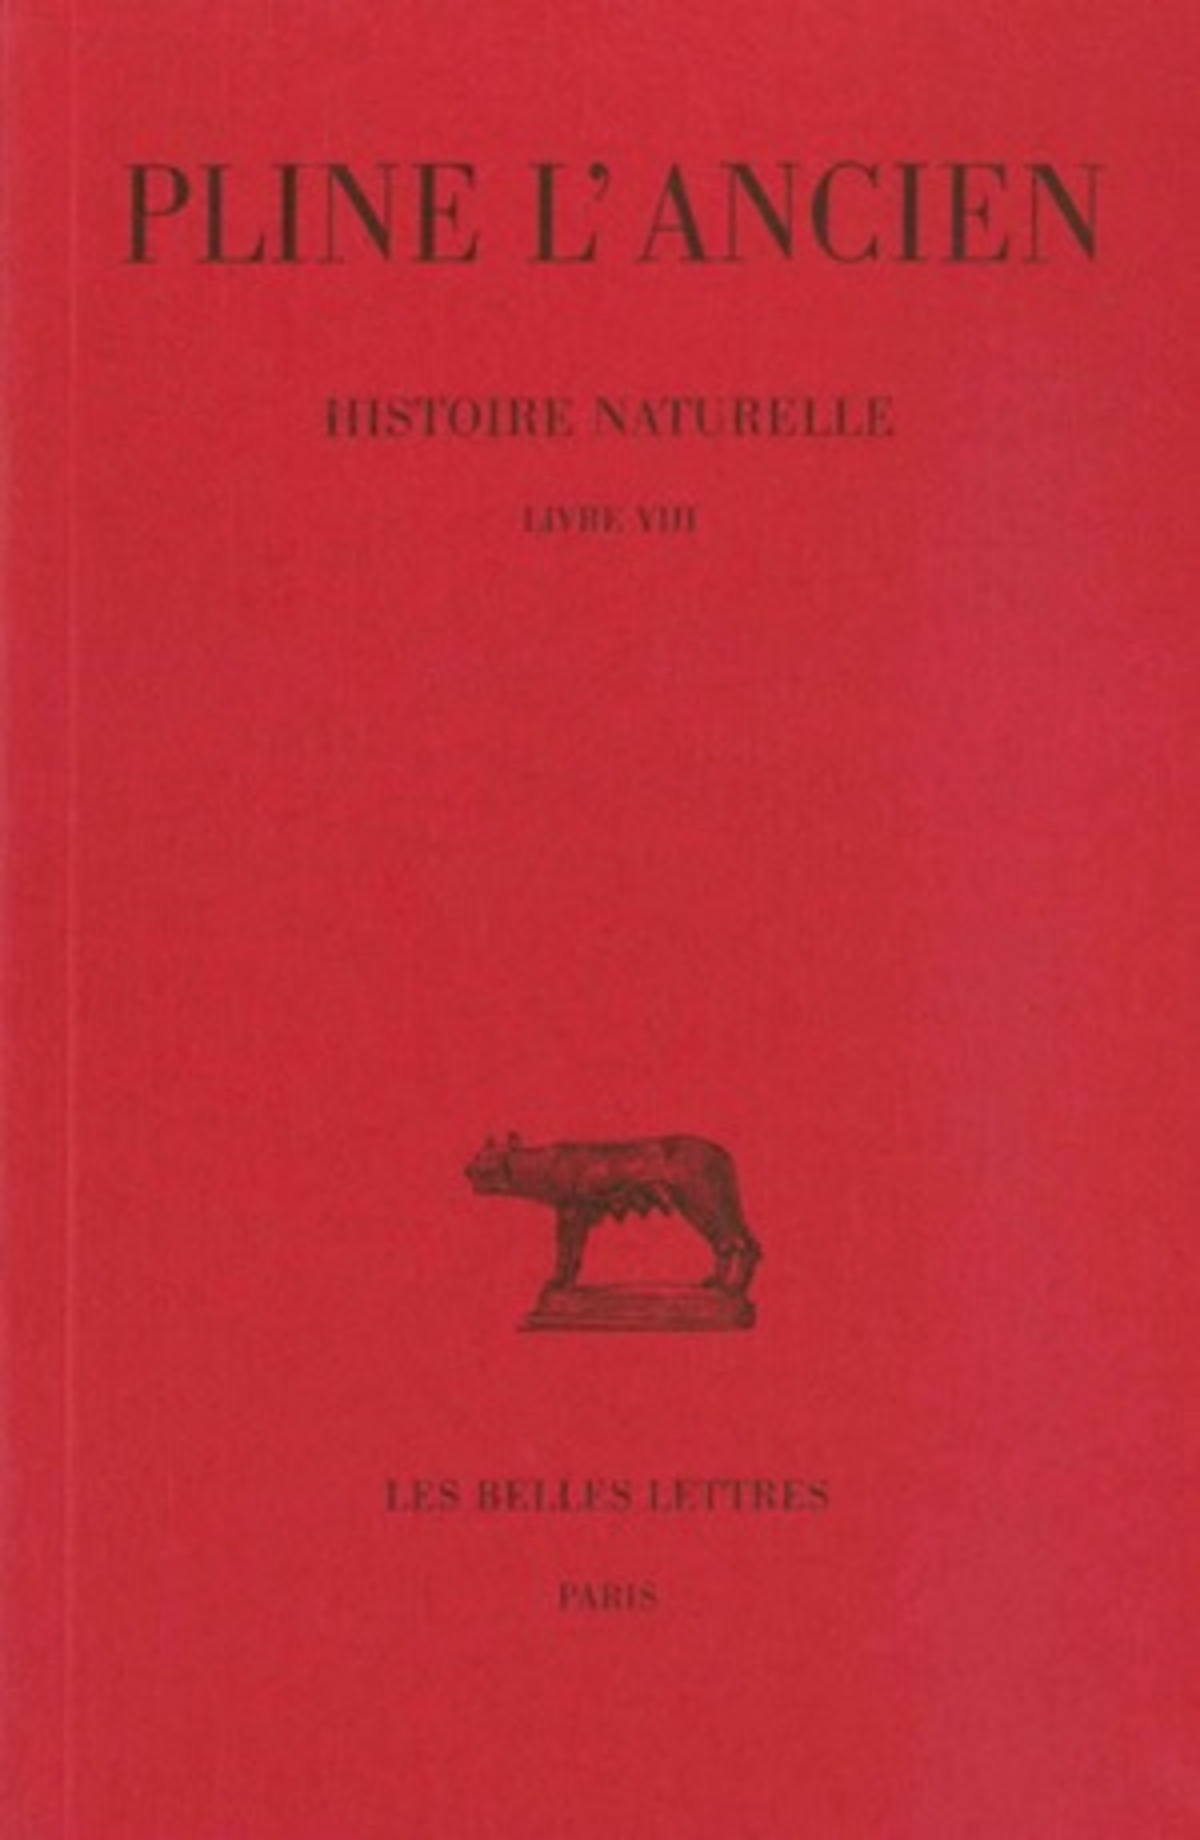 Histoire naturelle. Livre VIII